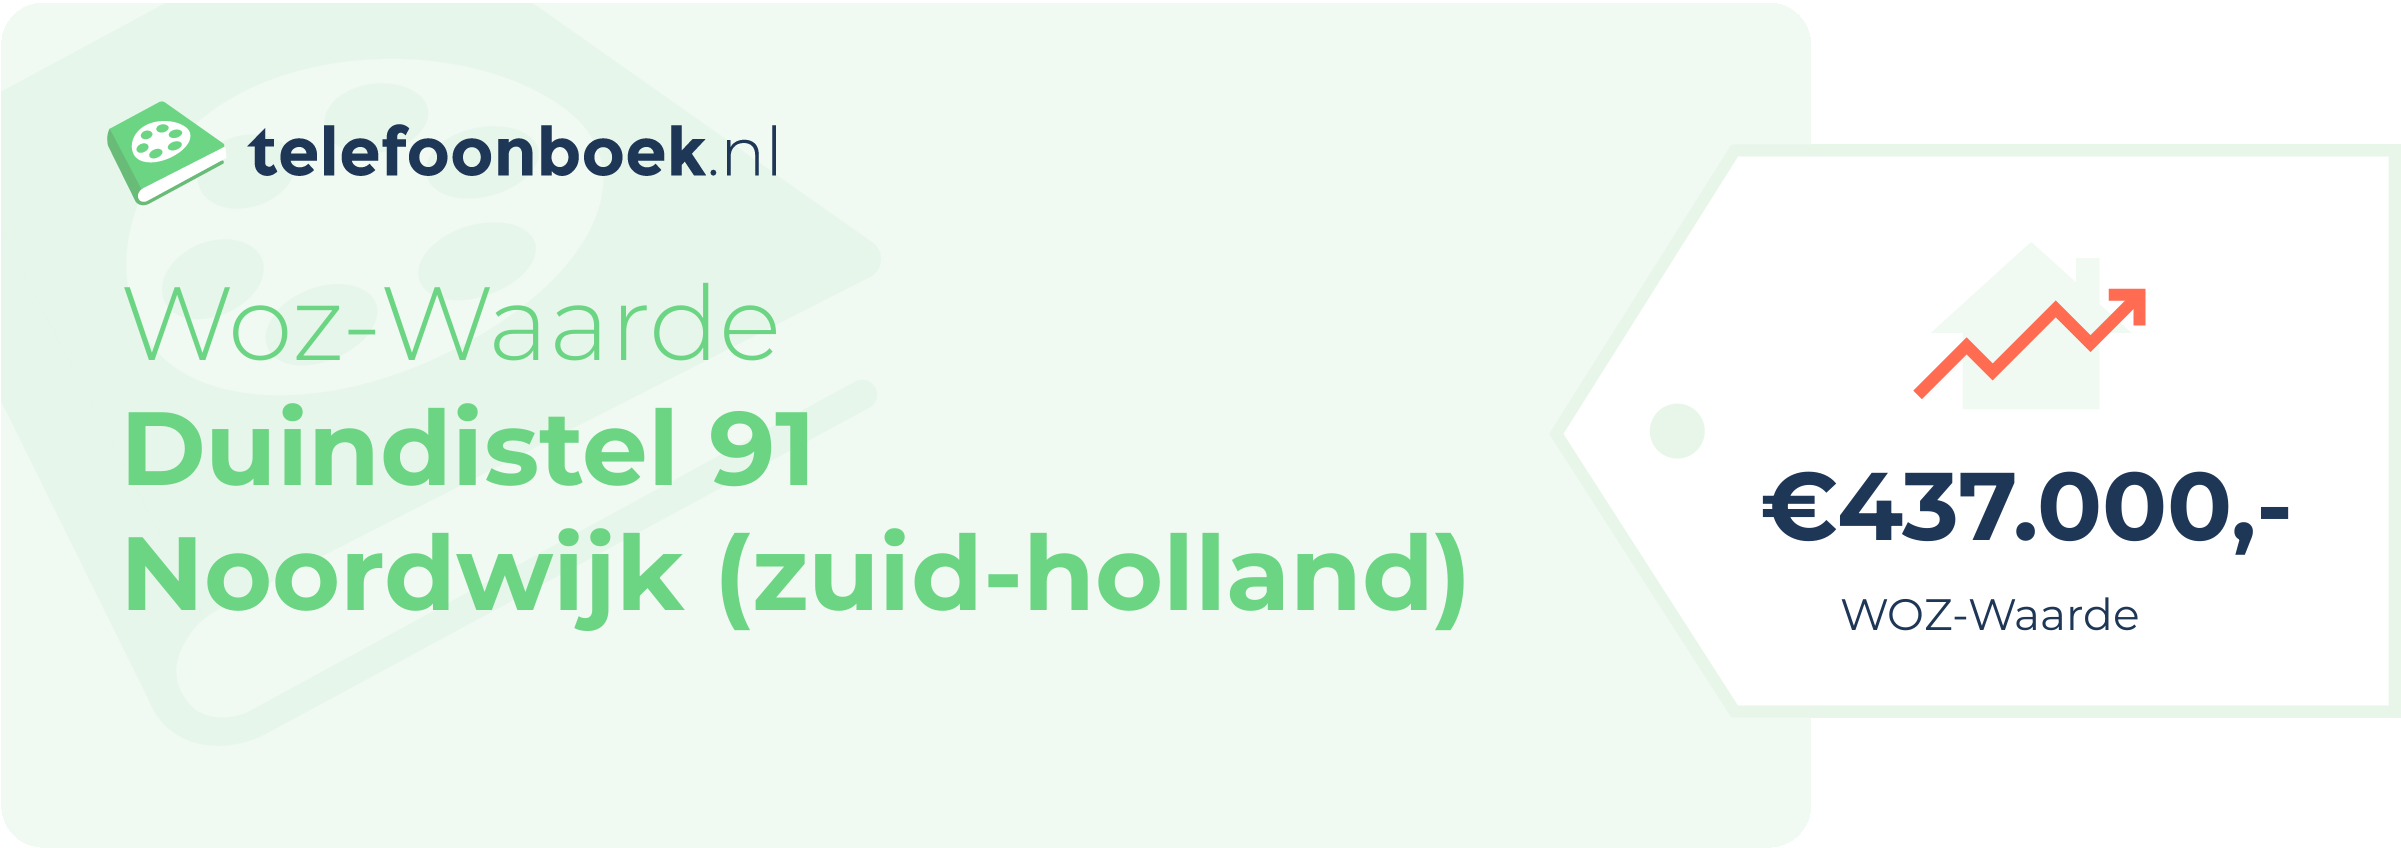 WOZ-waarde Duindistel 91 Noordwijk (Zuid-Holland)